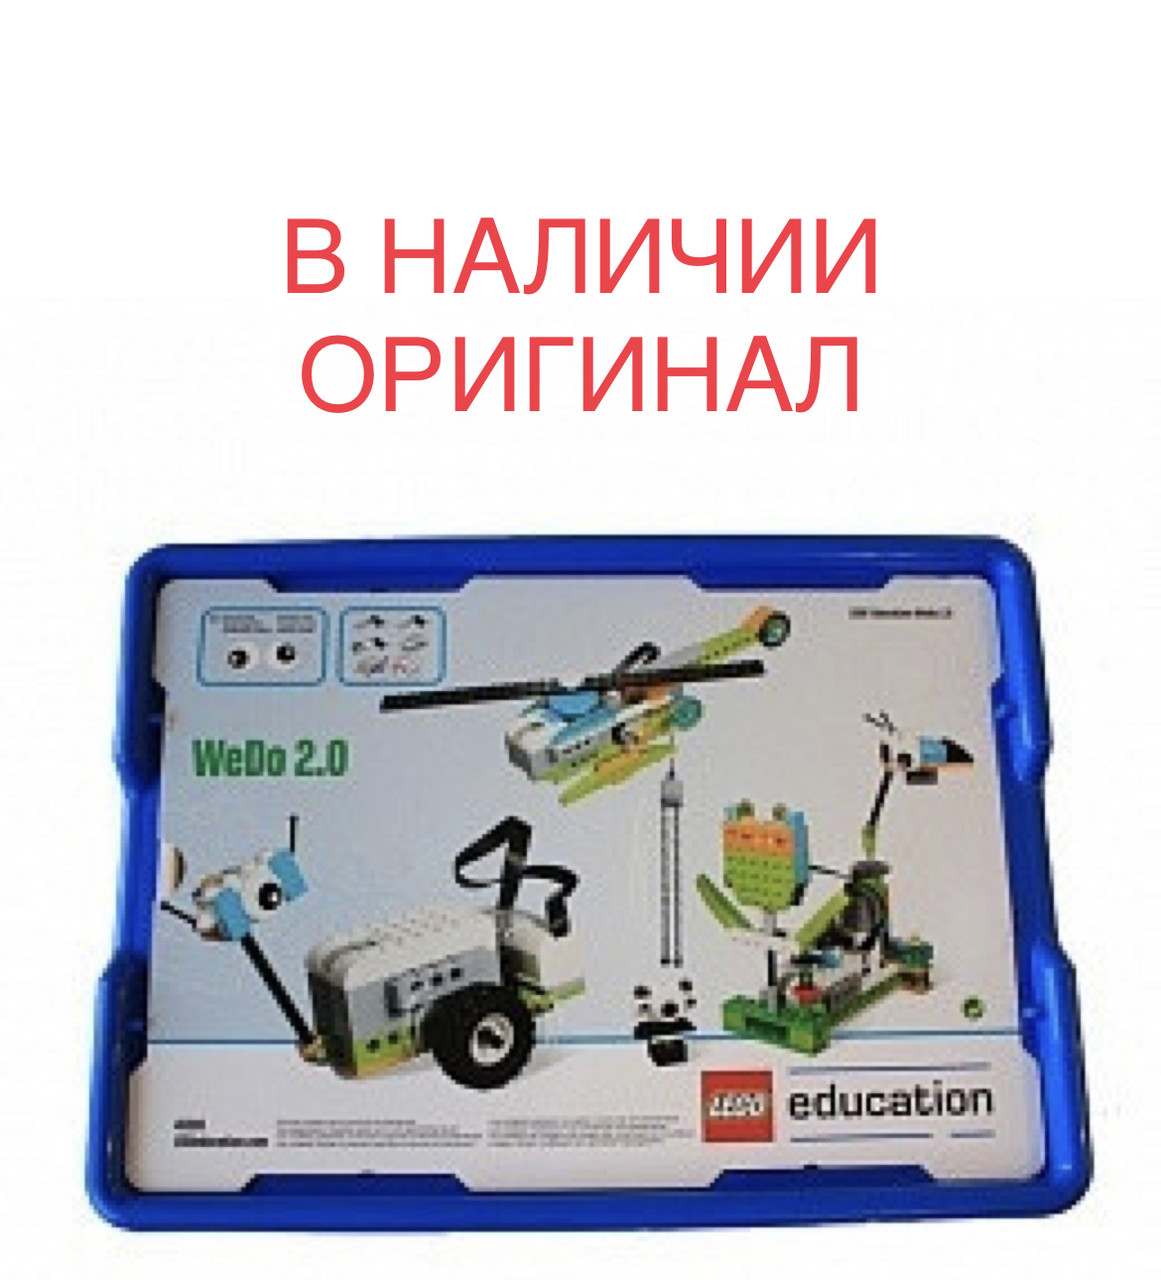 Lego Education WeDo 2.0 45300 базовый